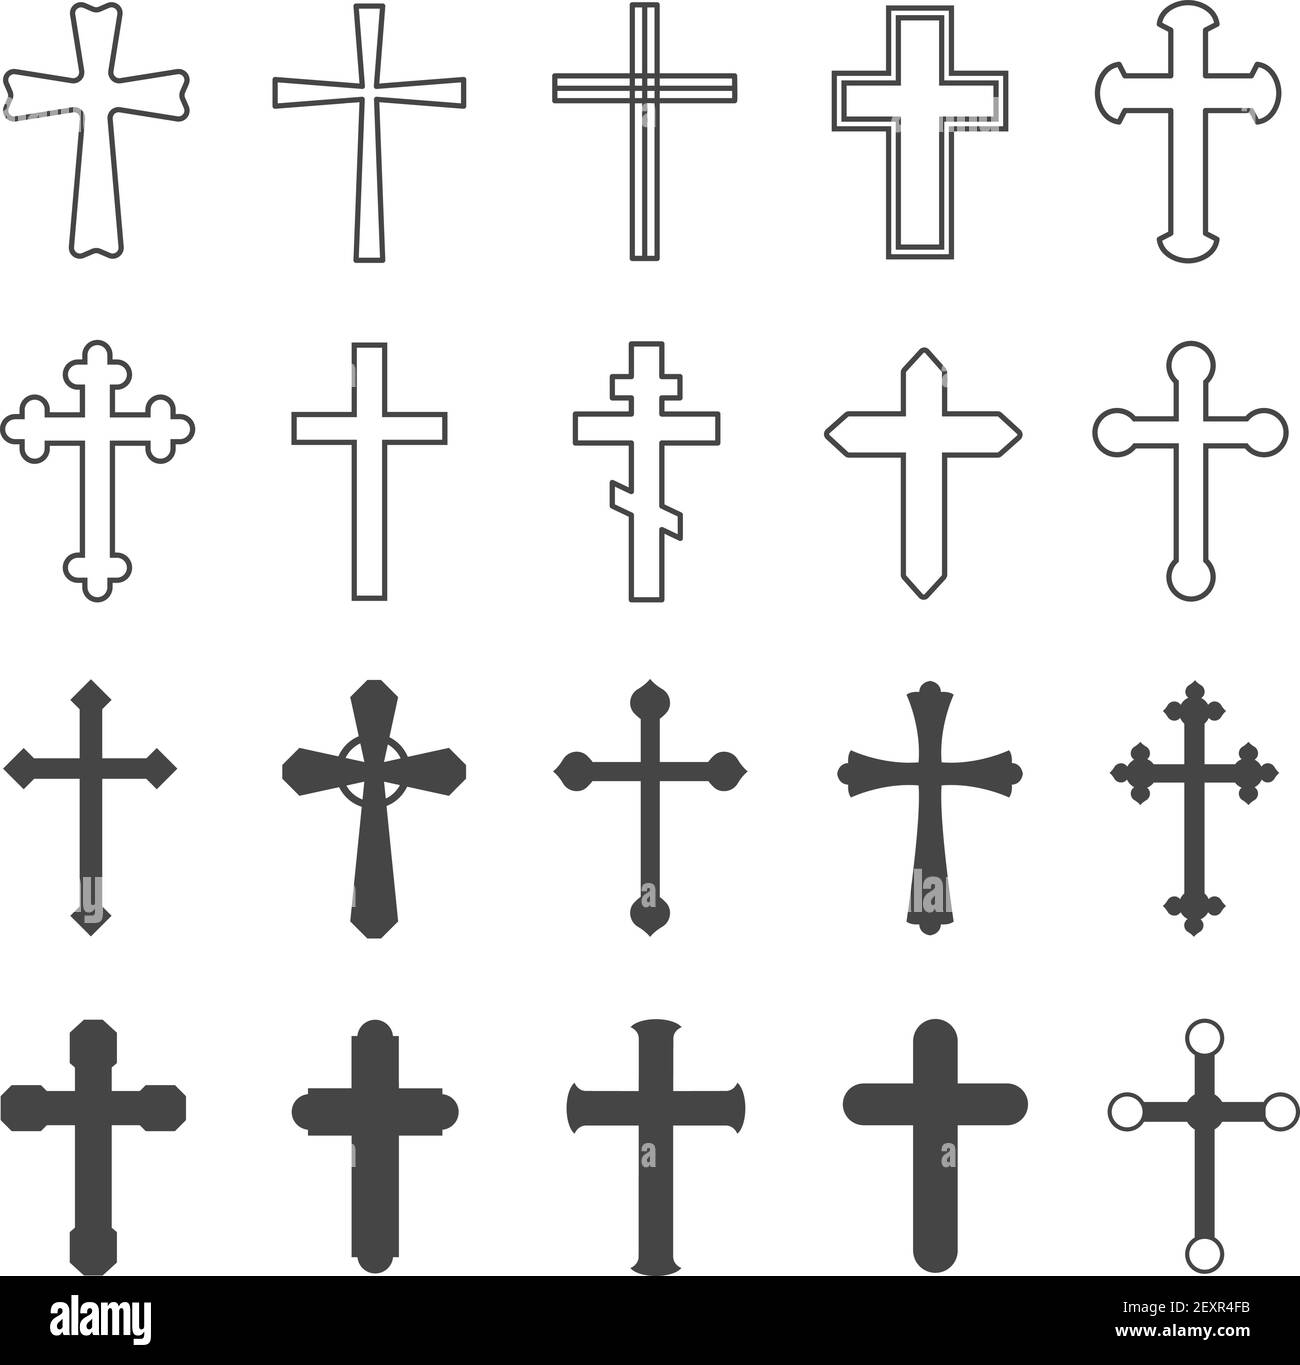 Croix chrétienne. Décoration de religion crucifix symbole catholique, église orthodoxe de foi conception croisée, ensemble de vecteur plat isolé Illustration de Vecteur